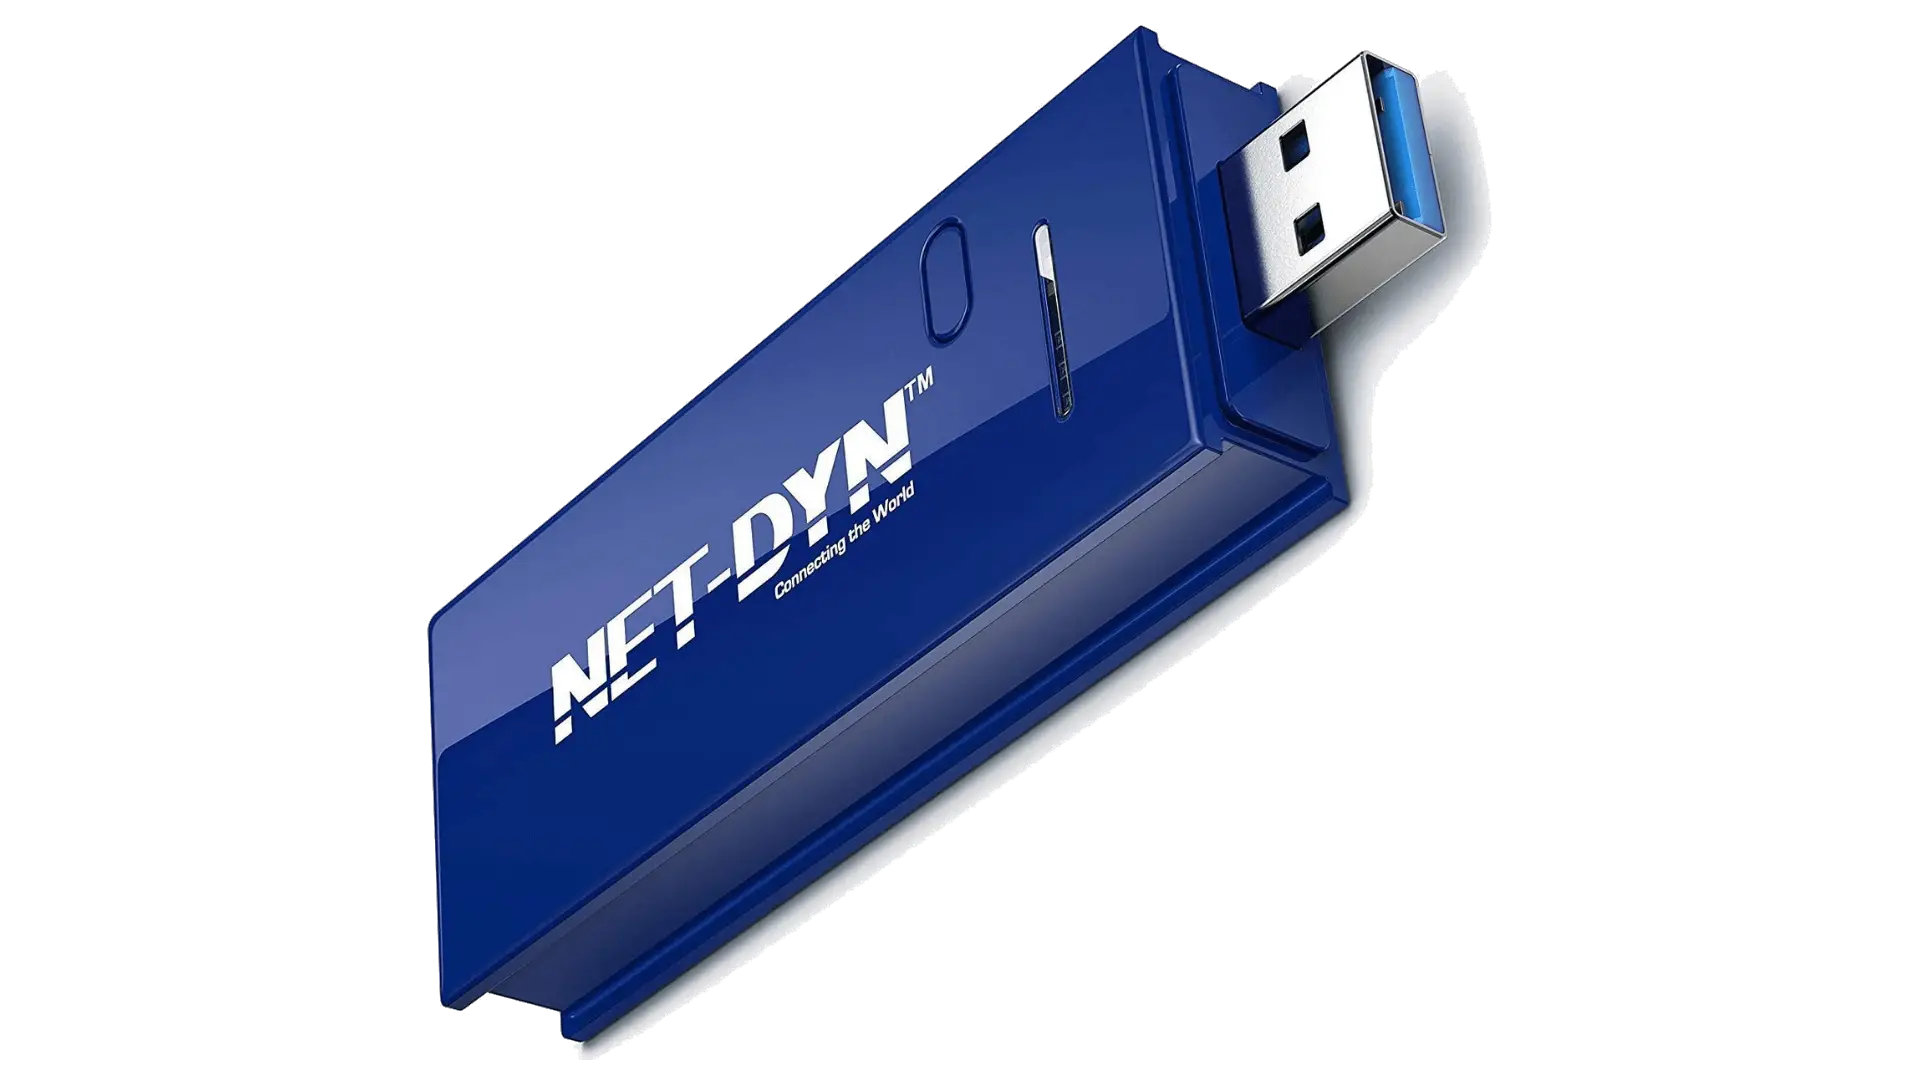 Net-Dyn AC1200 USB WiFi Adapter